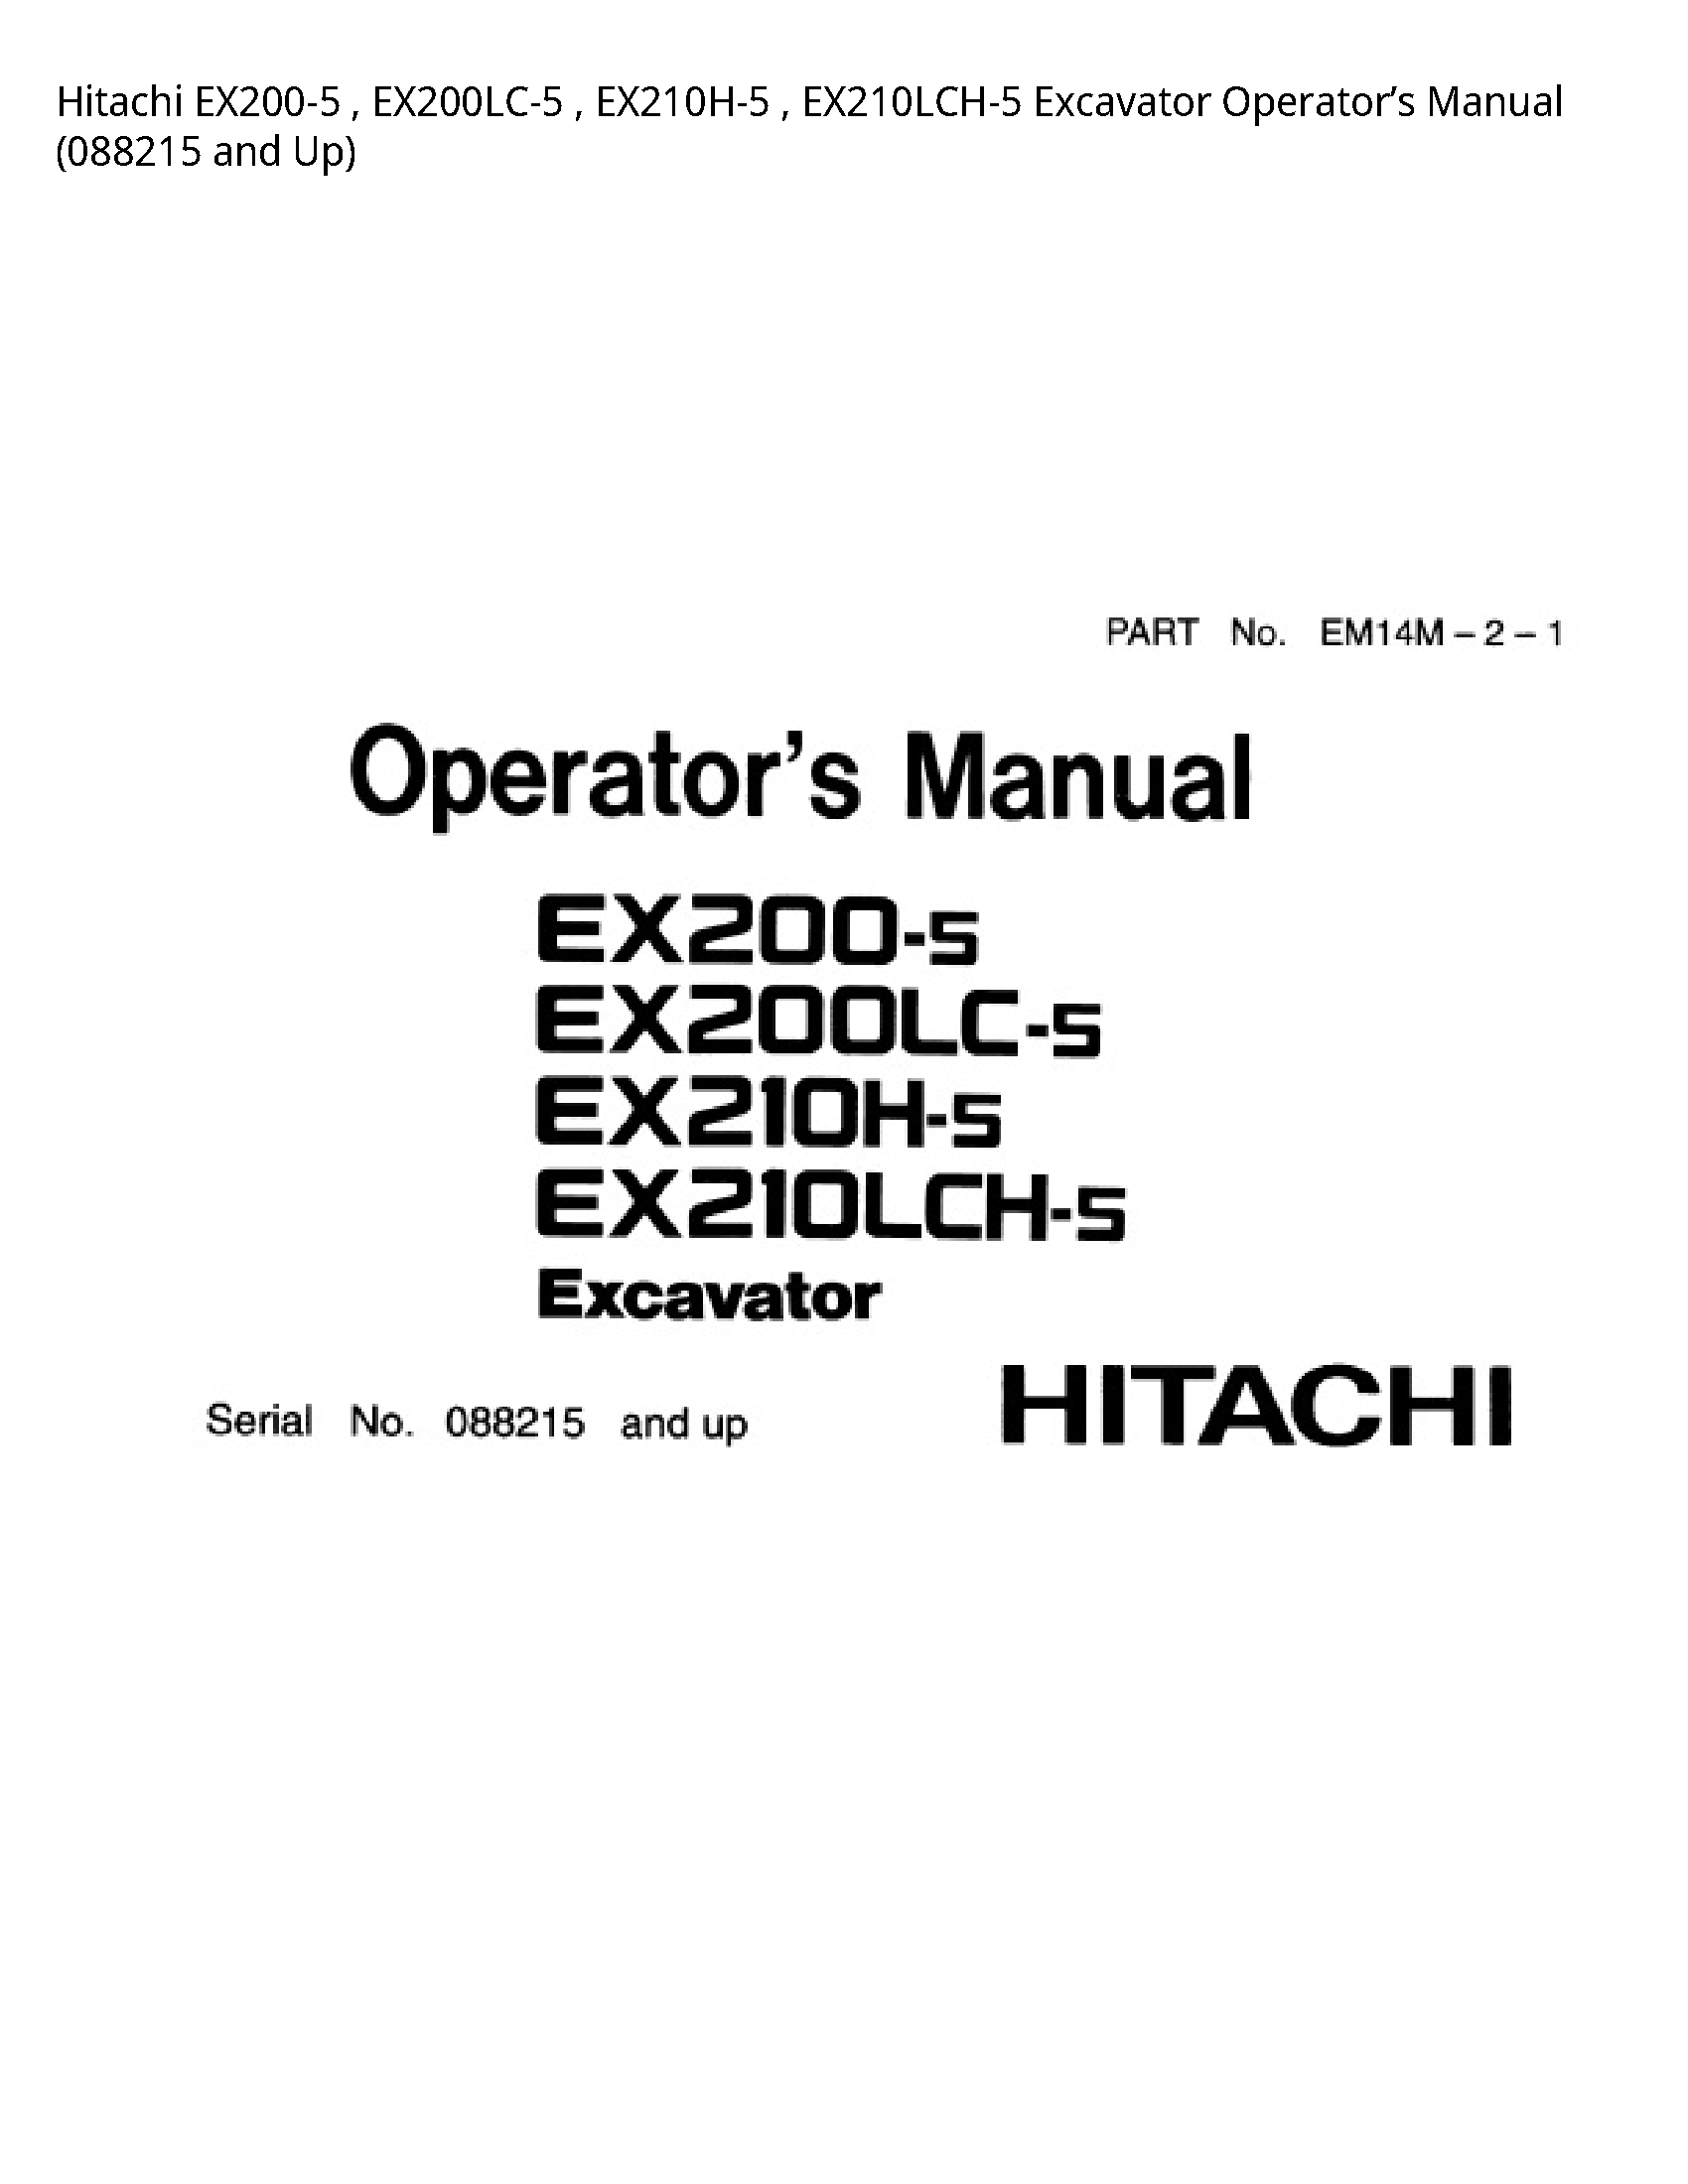 Hitachi EX200-5 Excavator Operator’s manual